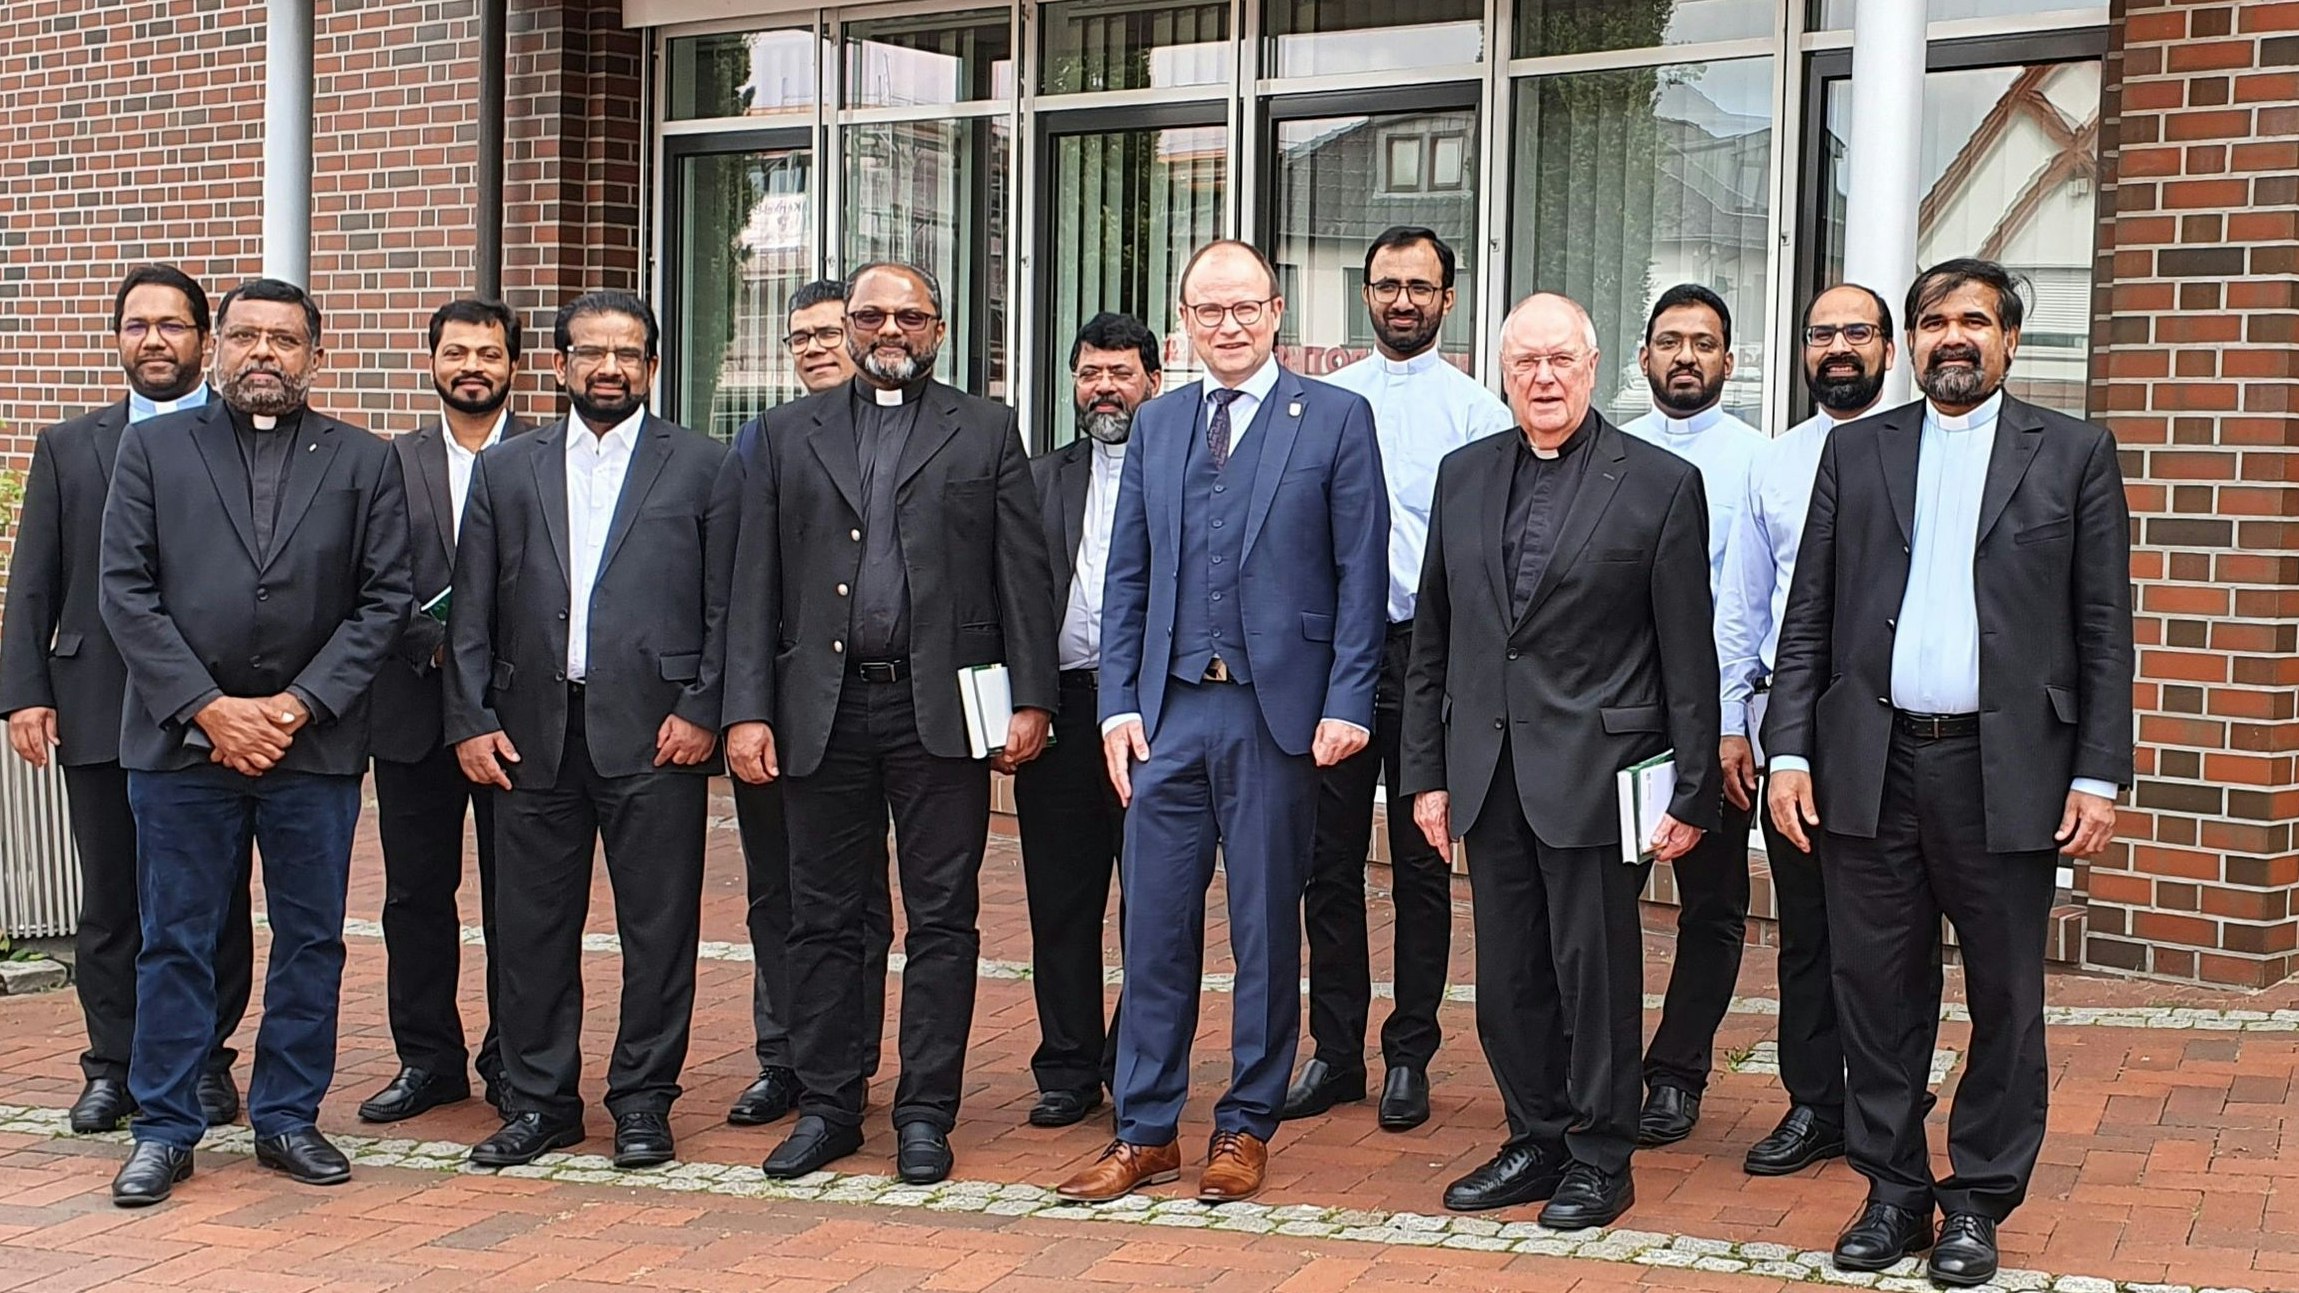 Empfang: Bürgermeister Thomas Höffmann (6. von rechts) begrüßte die indischen Patres. Foto: Looschen